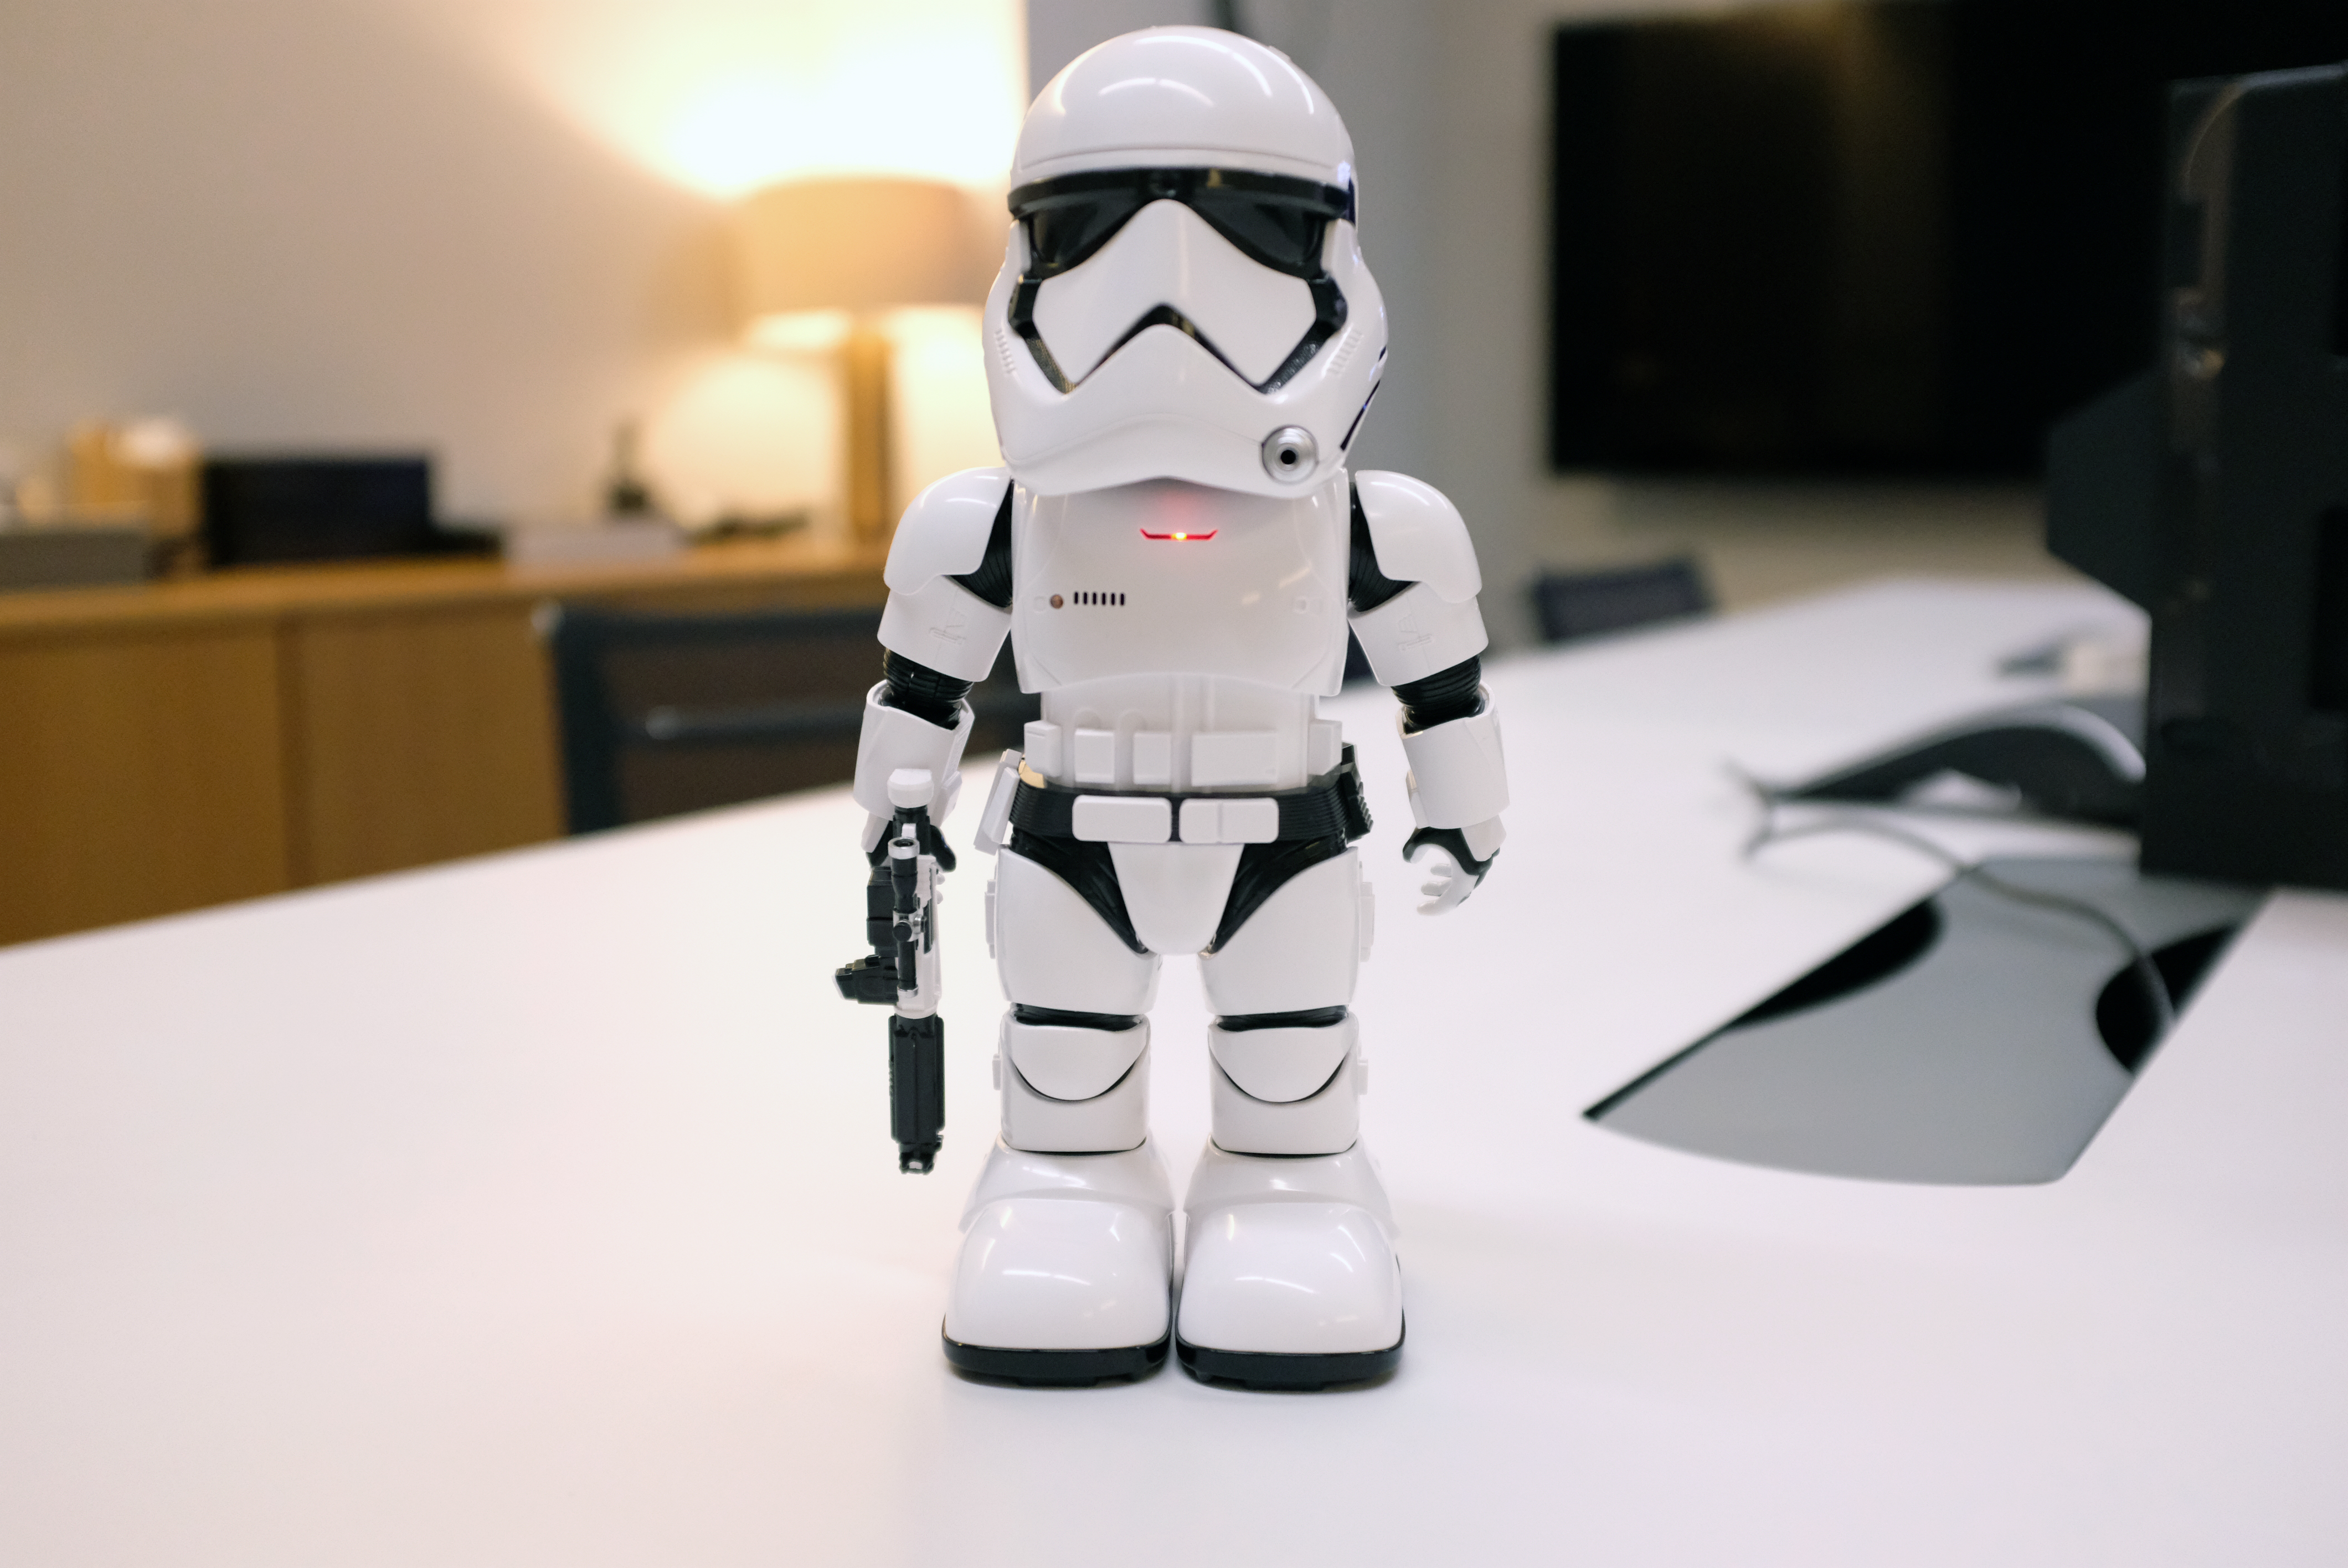 UBTECH's robotic First Order Stormtrooper patrols AR battlefields 